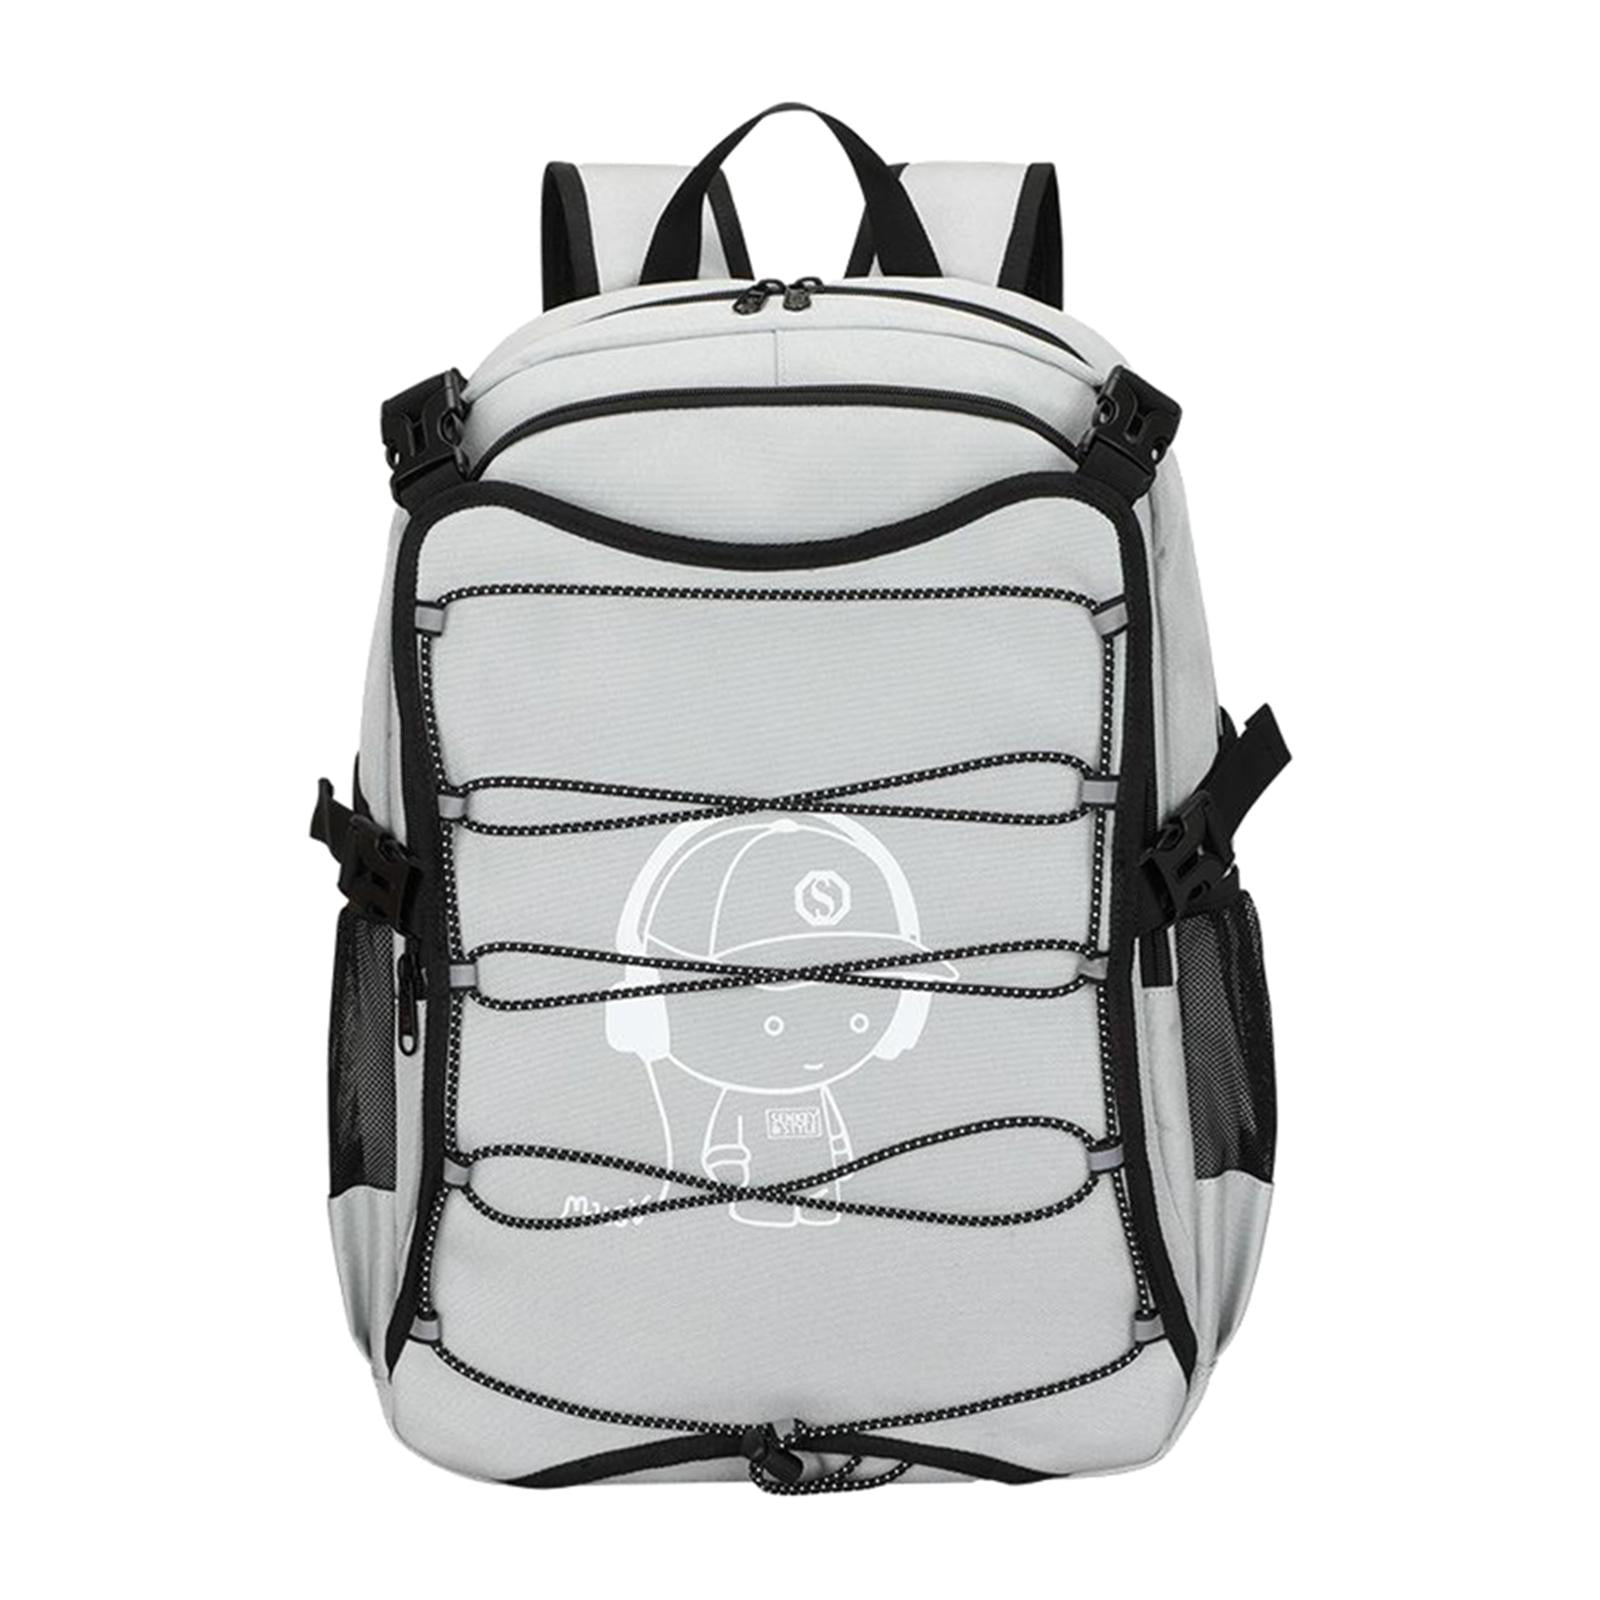 DYNWAVE Men Women Sports Laptop Backpack Roomy Bag Shoulder Purse Padded Strap